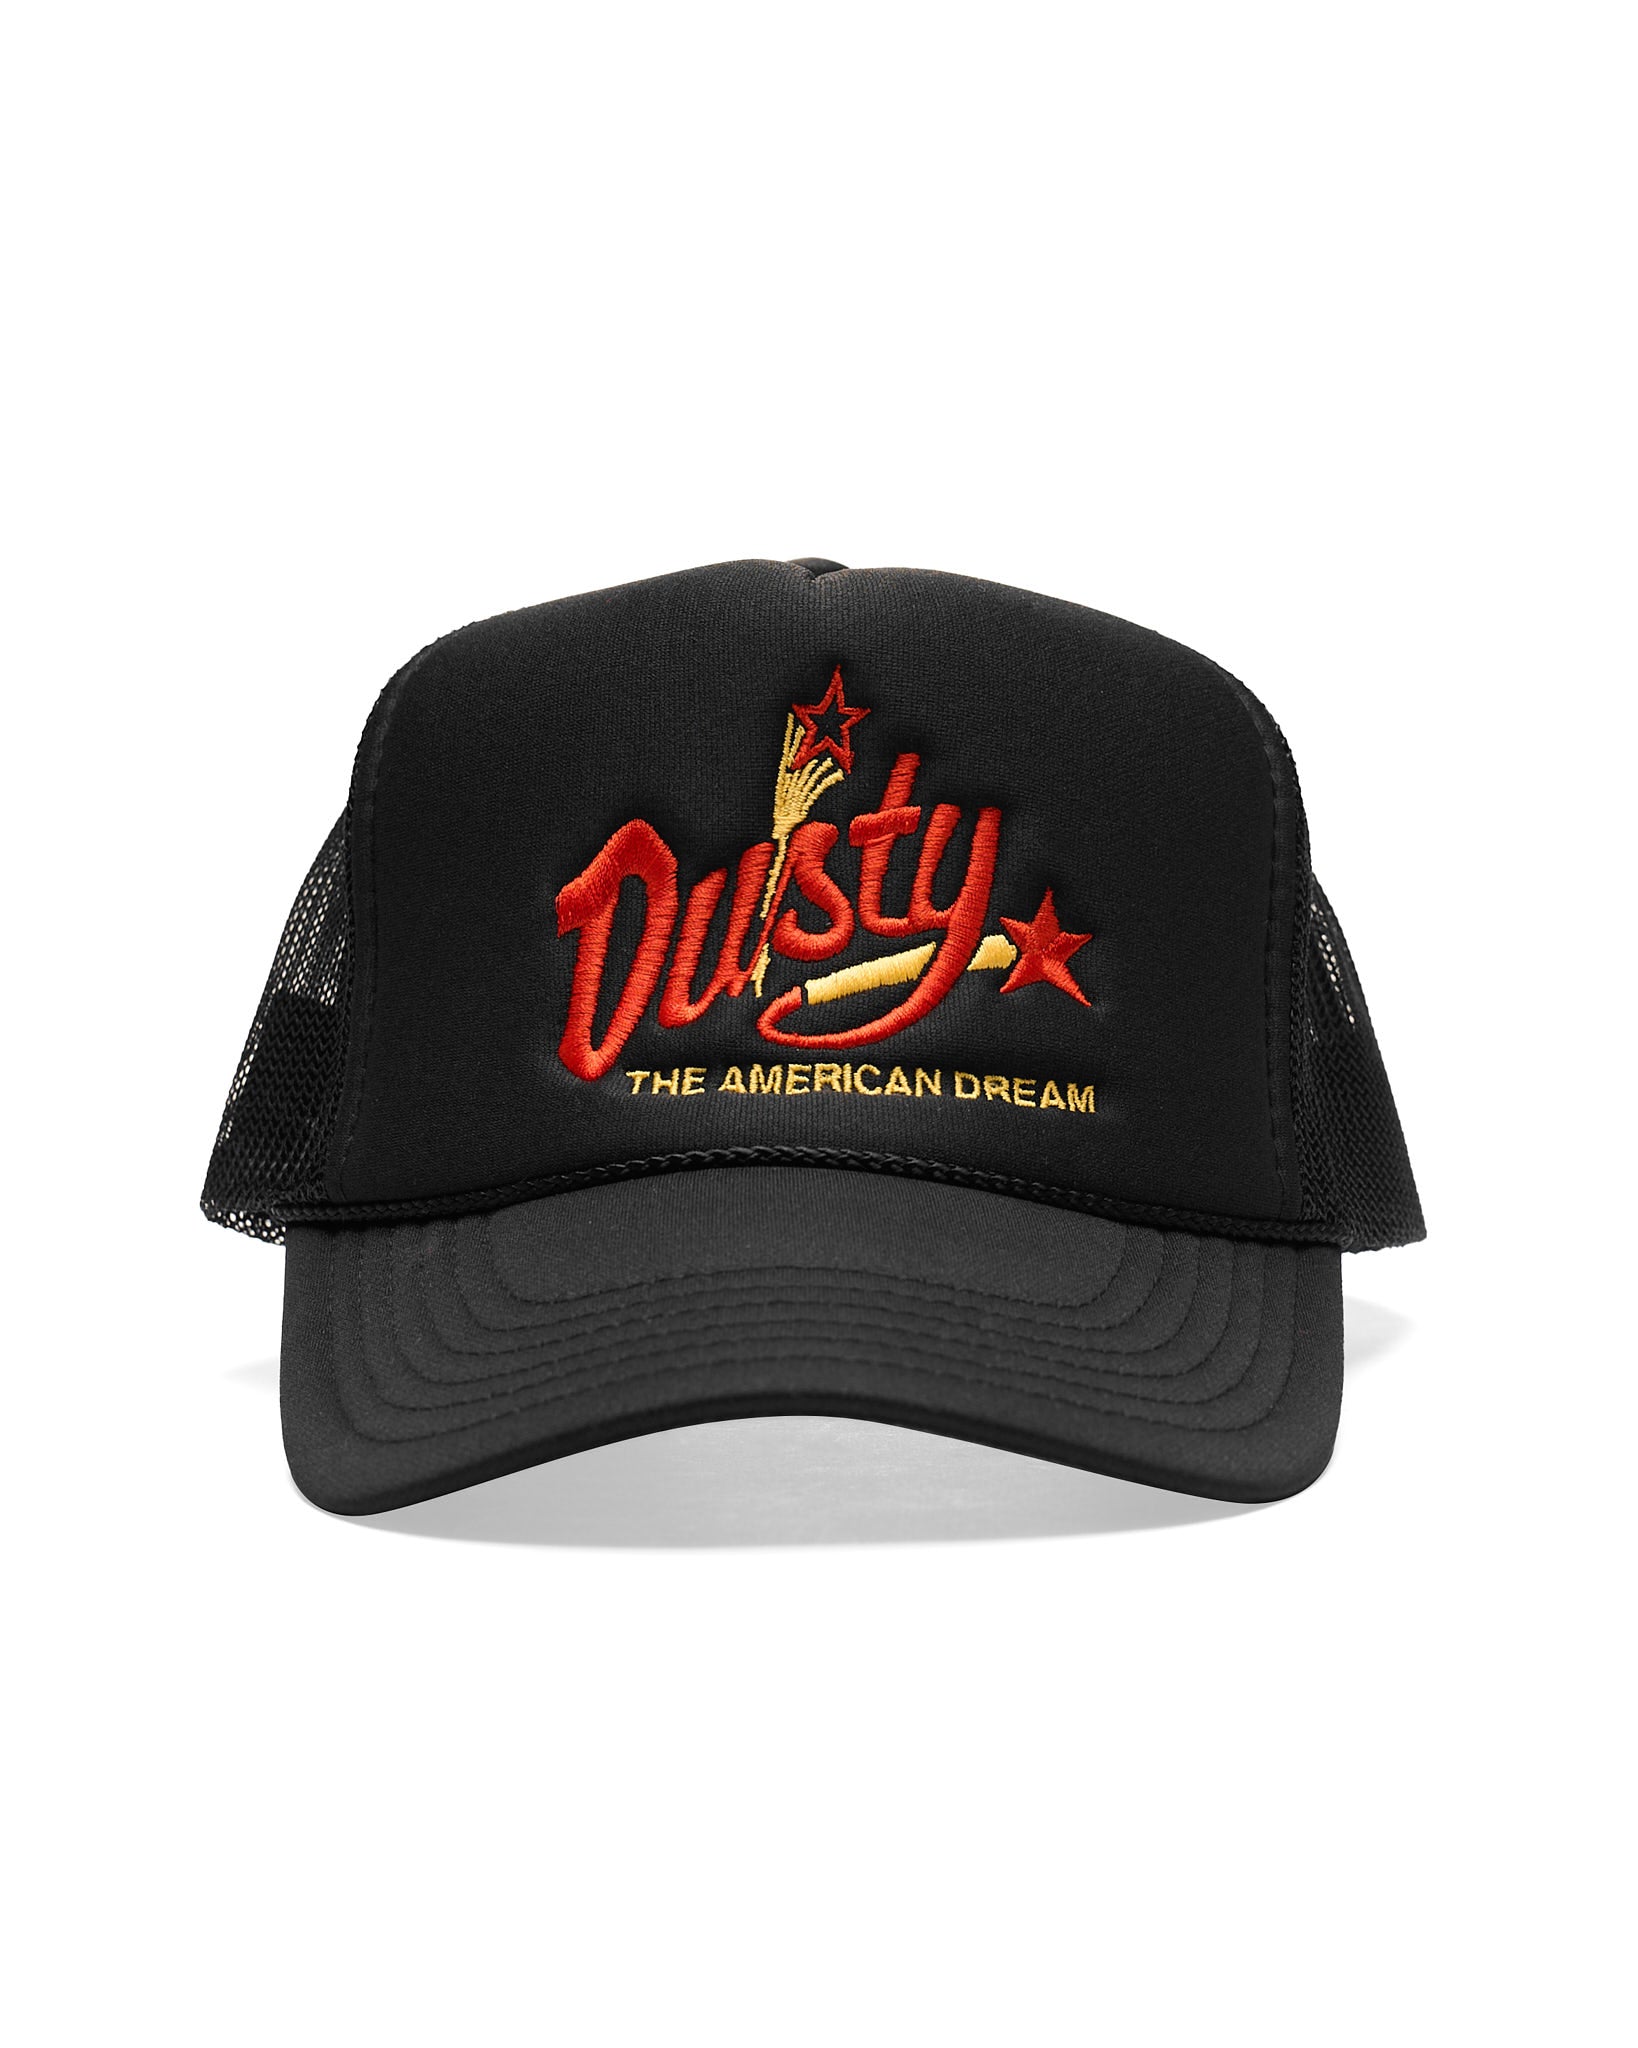 Dusty Rhodes American Dream Trucker Hat